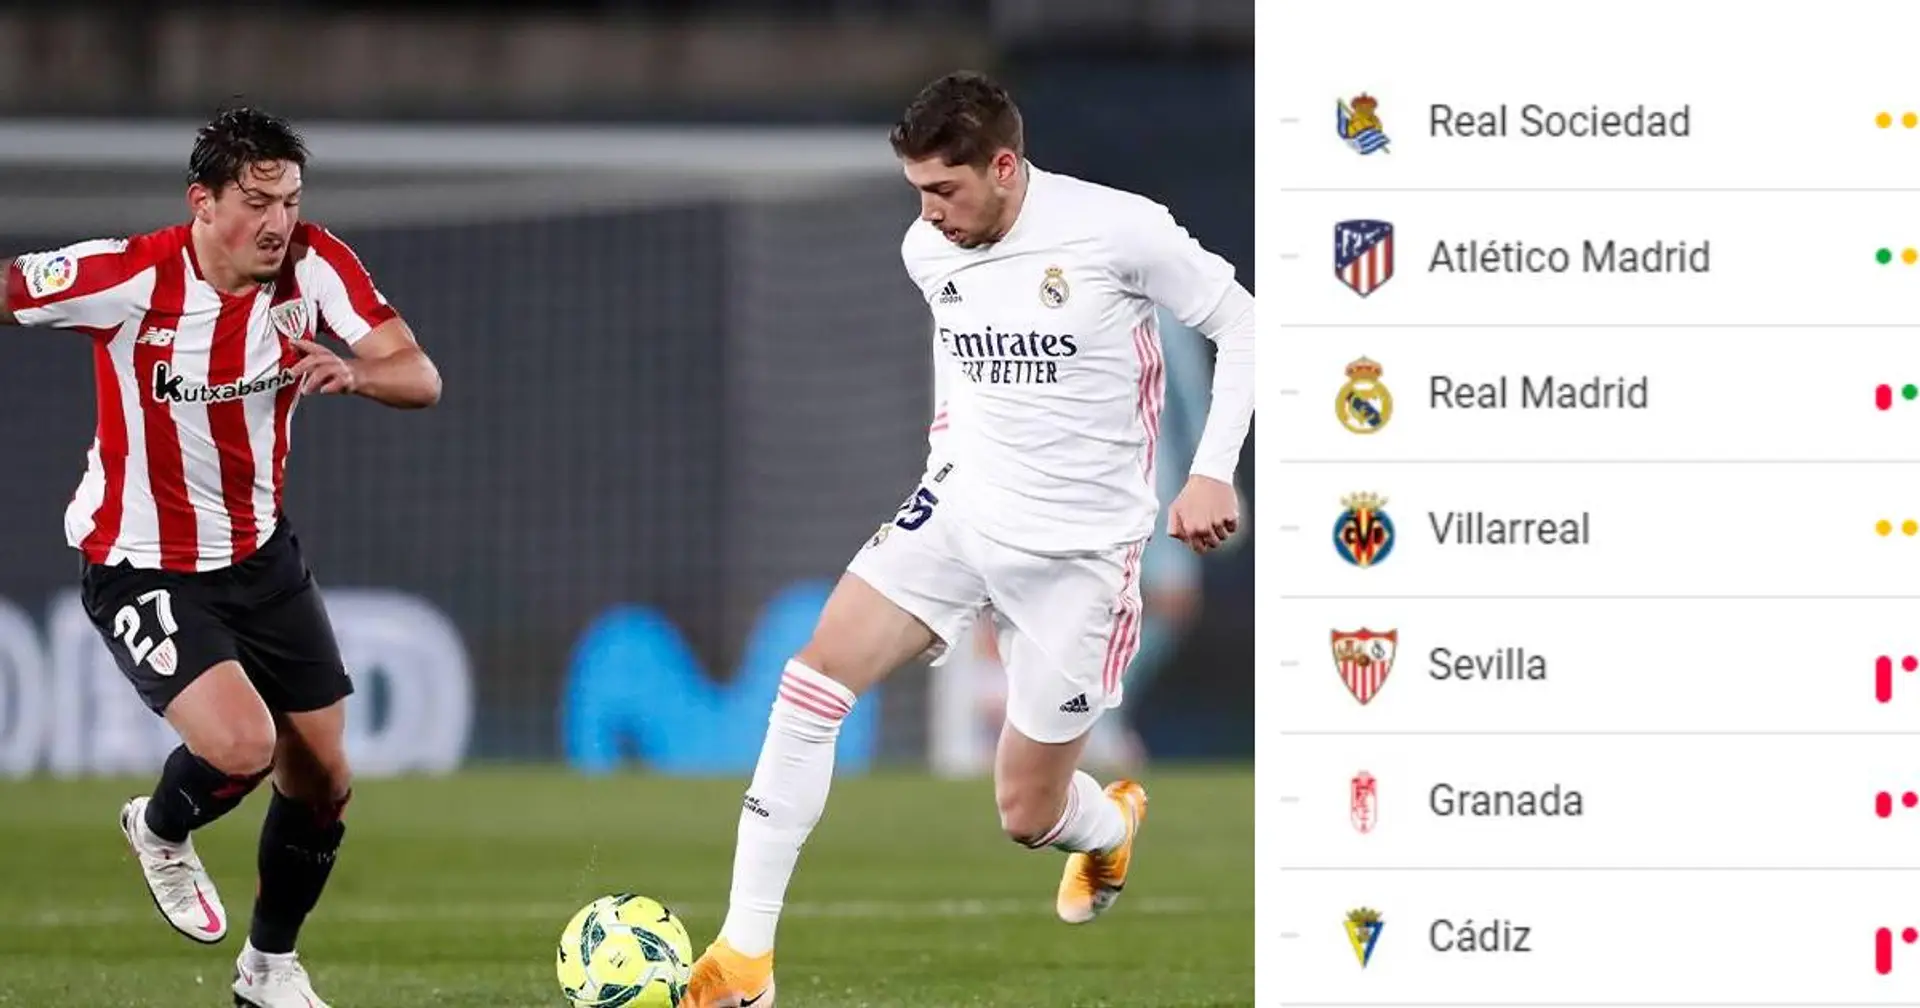 Au même niveau que les leaders de la Liga: le rebond stupéfiant du Real Madrid dans le classement de la Liga expliqué en 4 points clés